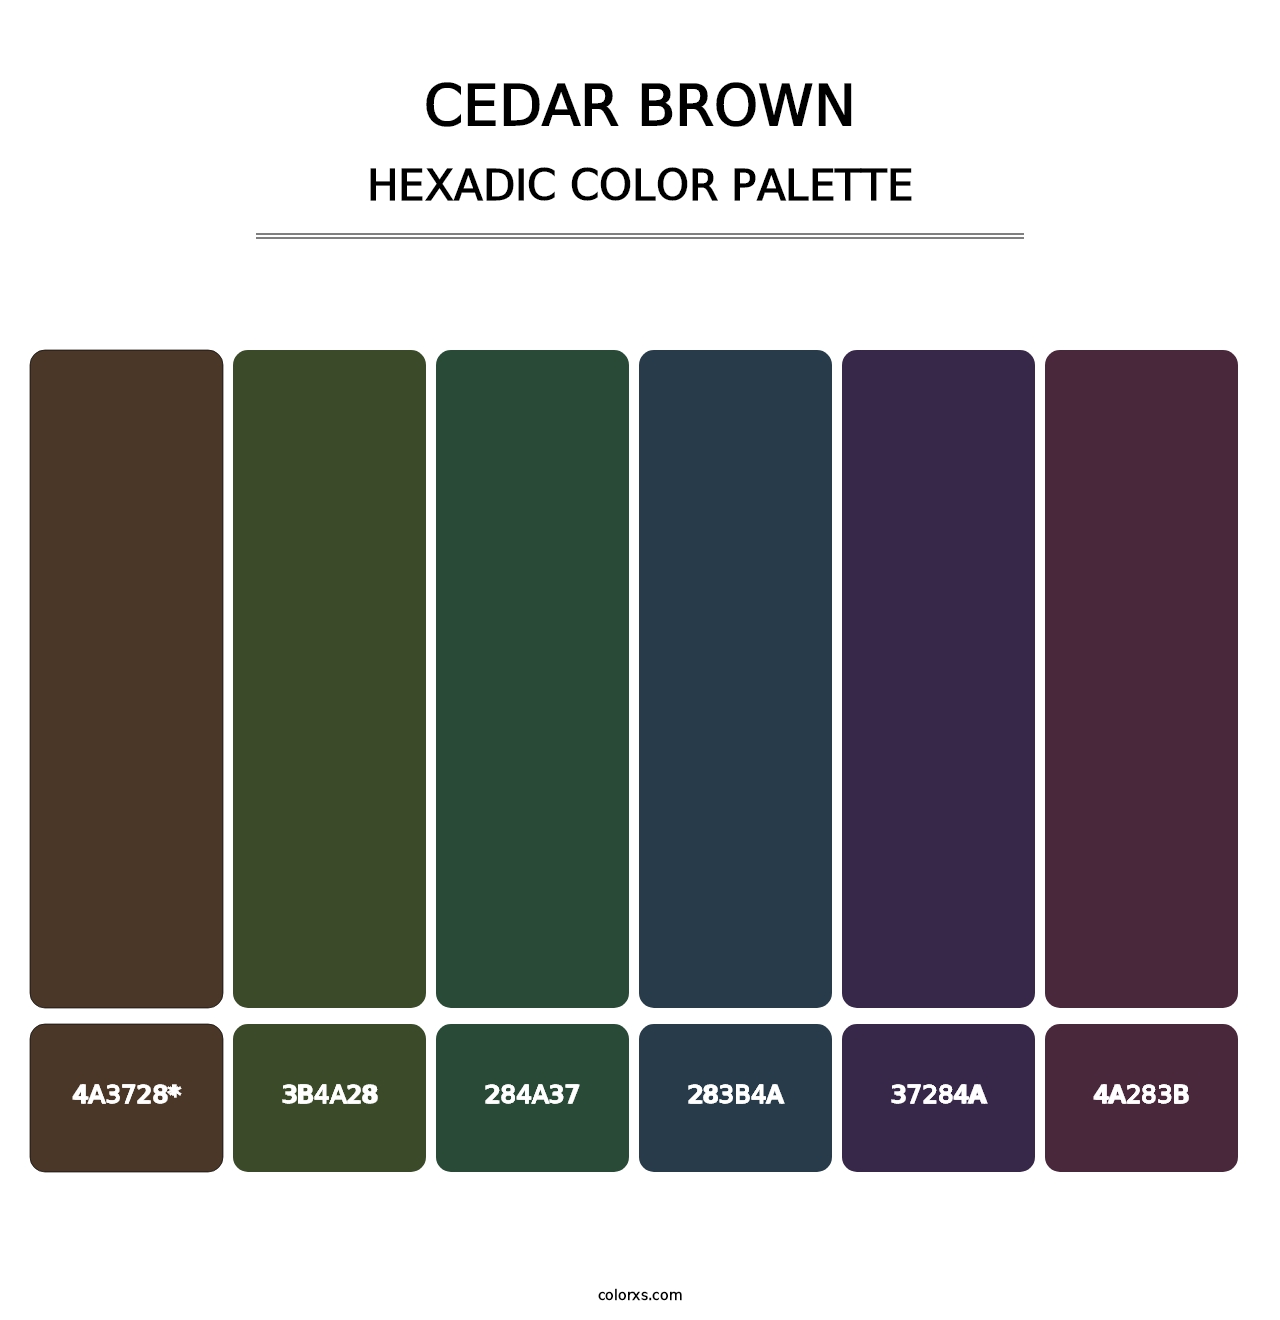 Cedar Brown - Hexadic Color Palette